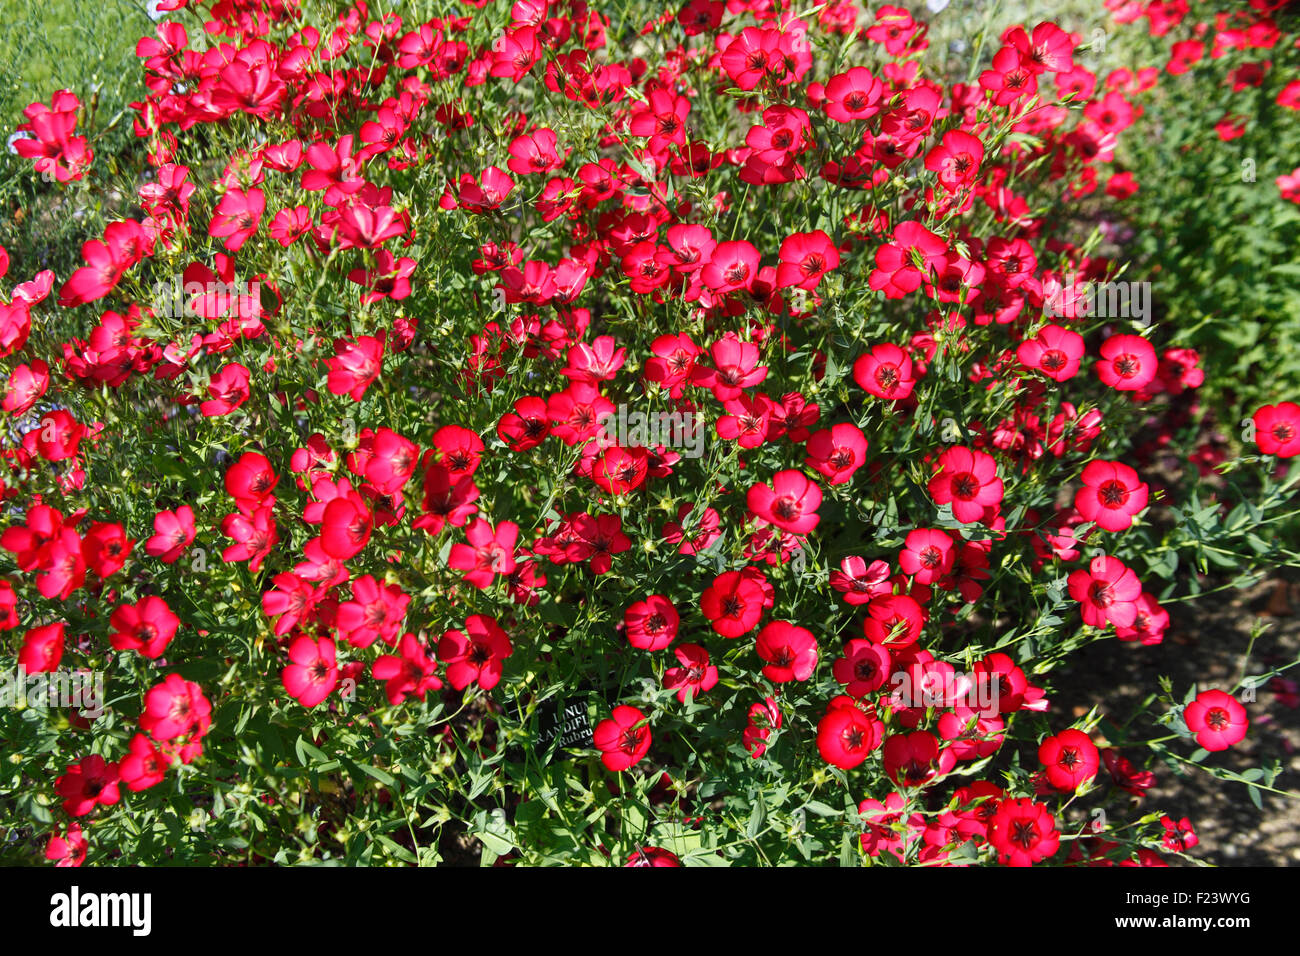 Linum grandiflorum 'Rubrum' plants in flowers Stock Photo